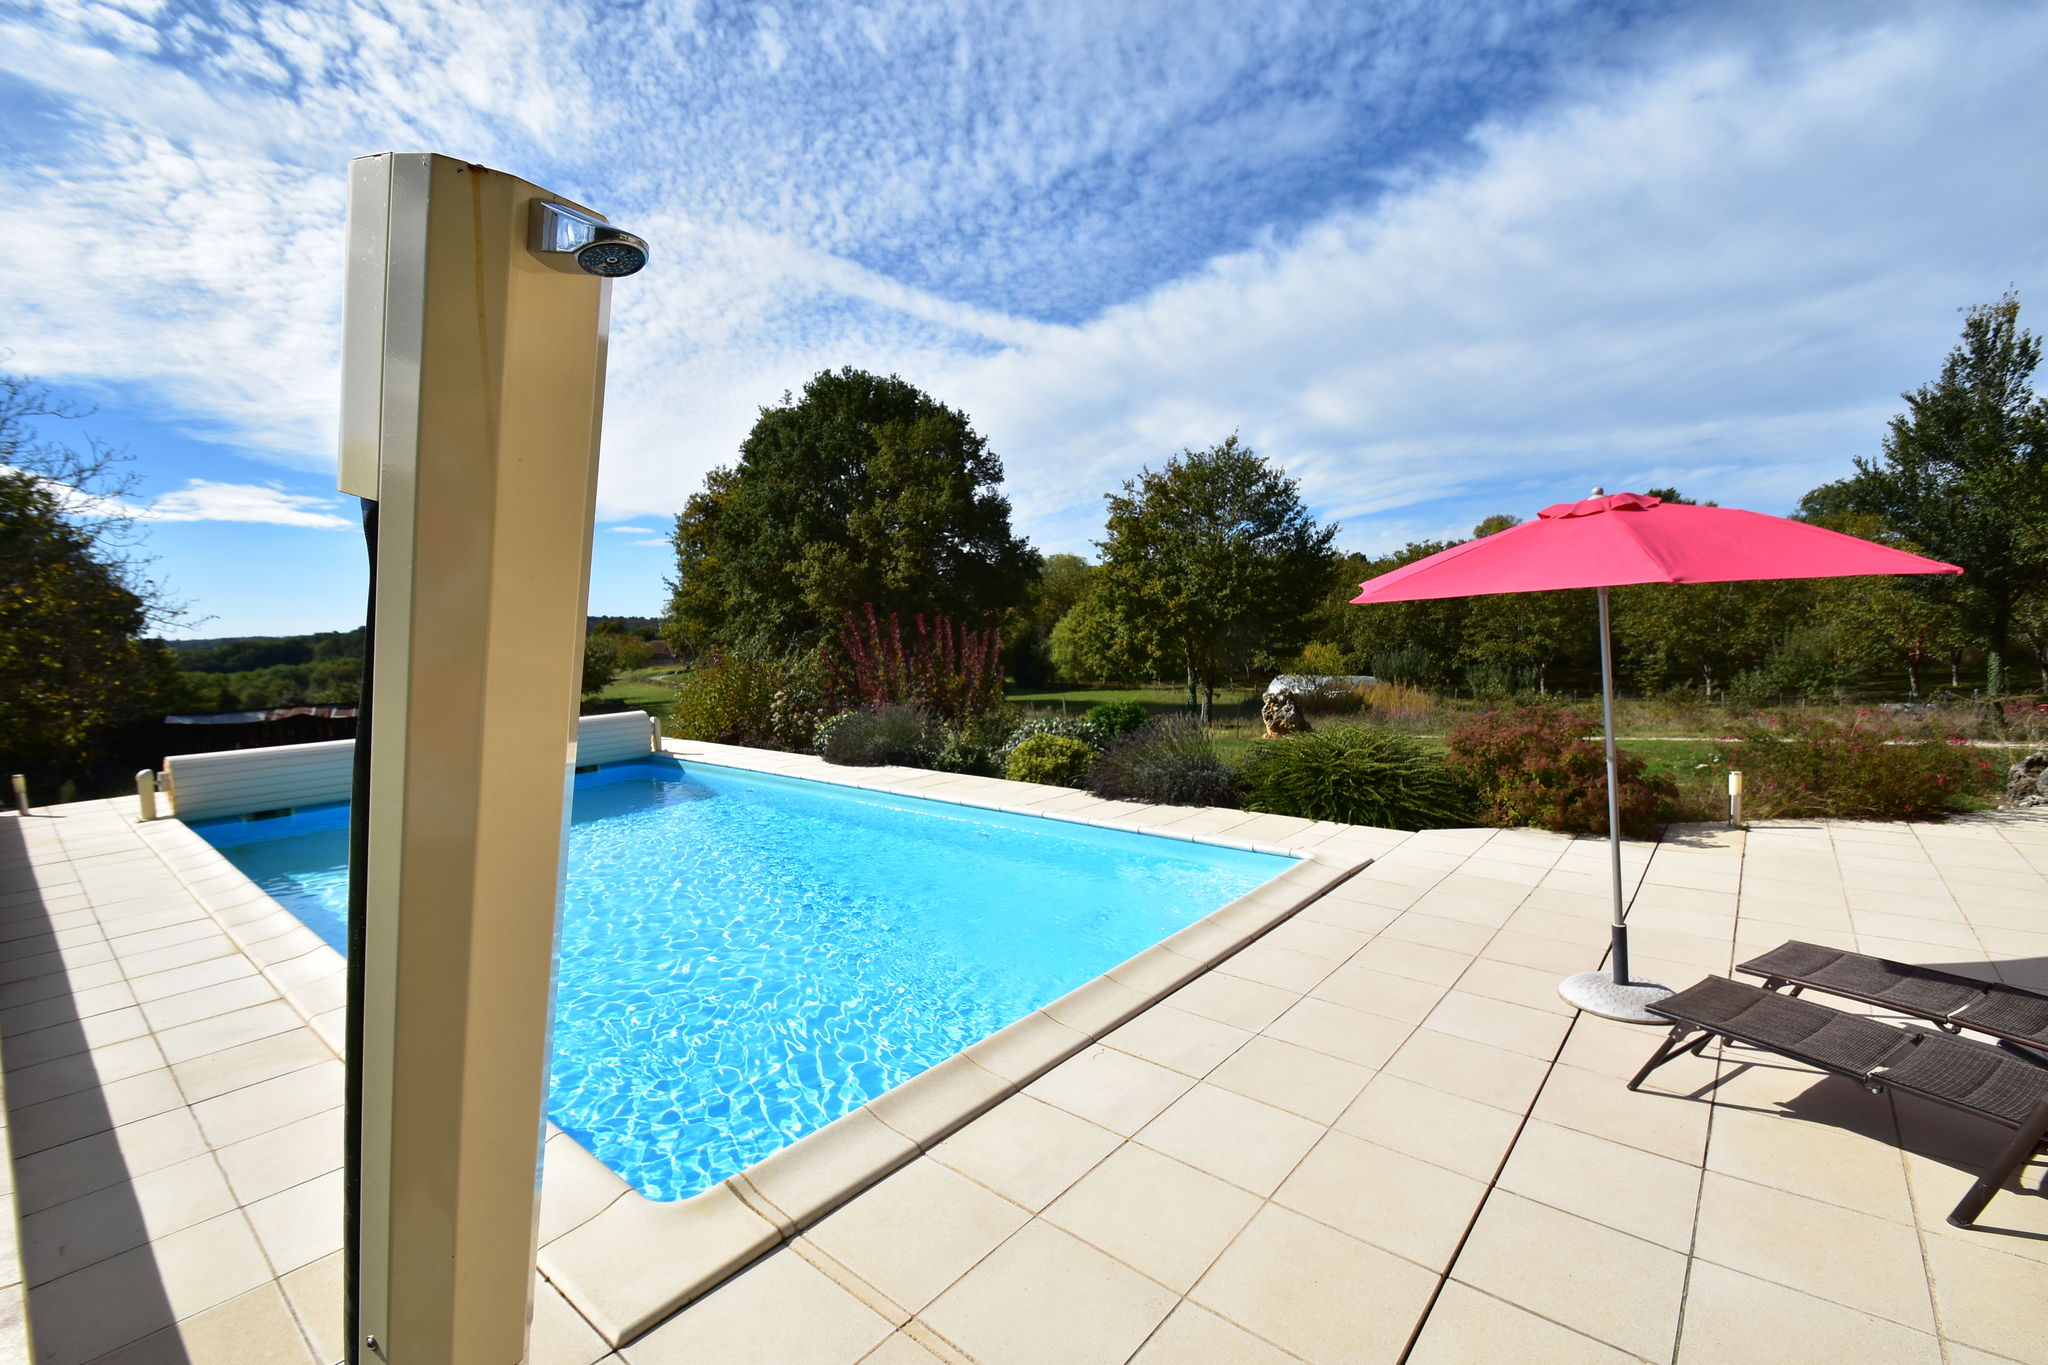 Maison de vacances avec piscine privée à Montcléra en France